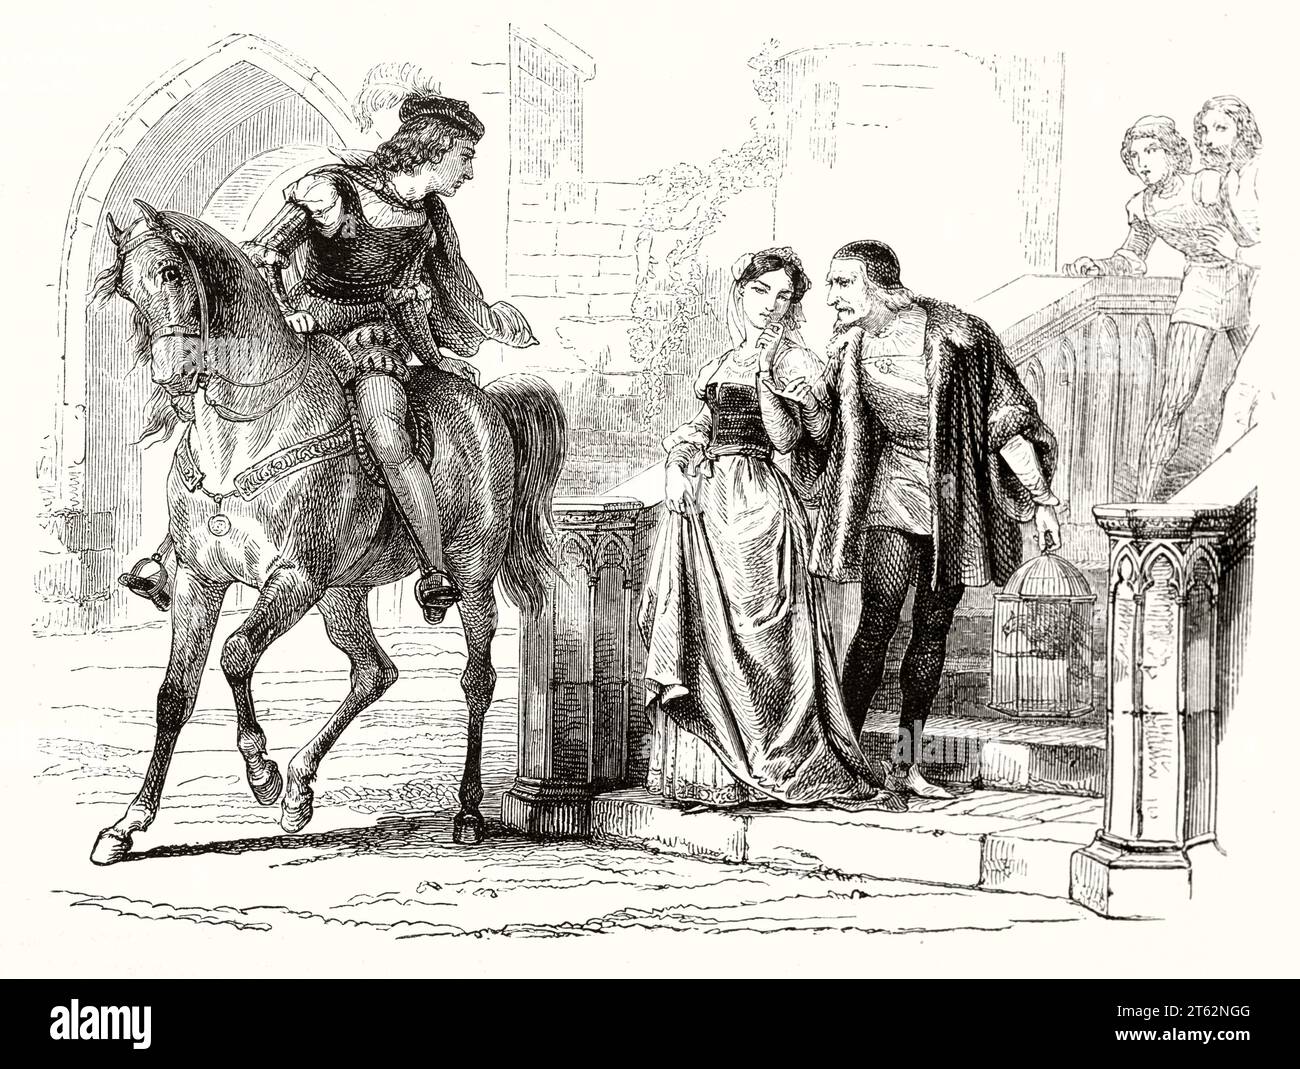 Illustration ancienne représentant une scène médiévale : femme et deux hommes. Par Girardet, publ. Sur magasin pittoresque, Paris, 1849 Banque D'Images